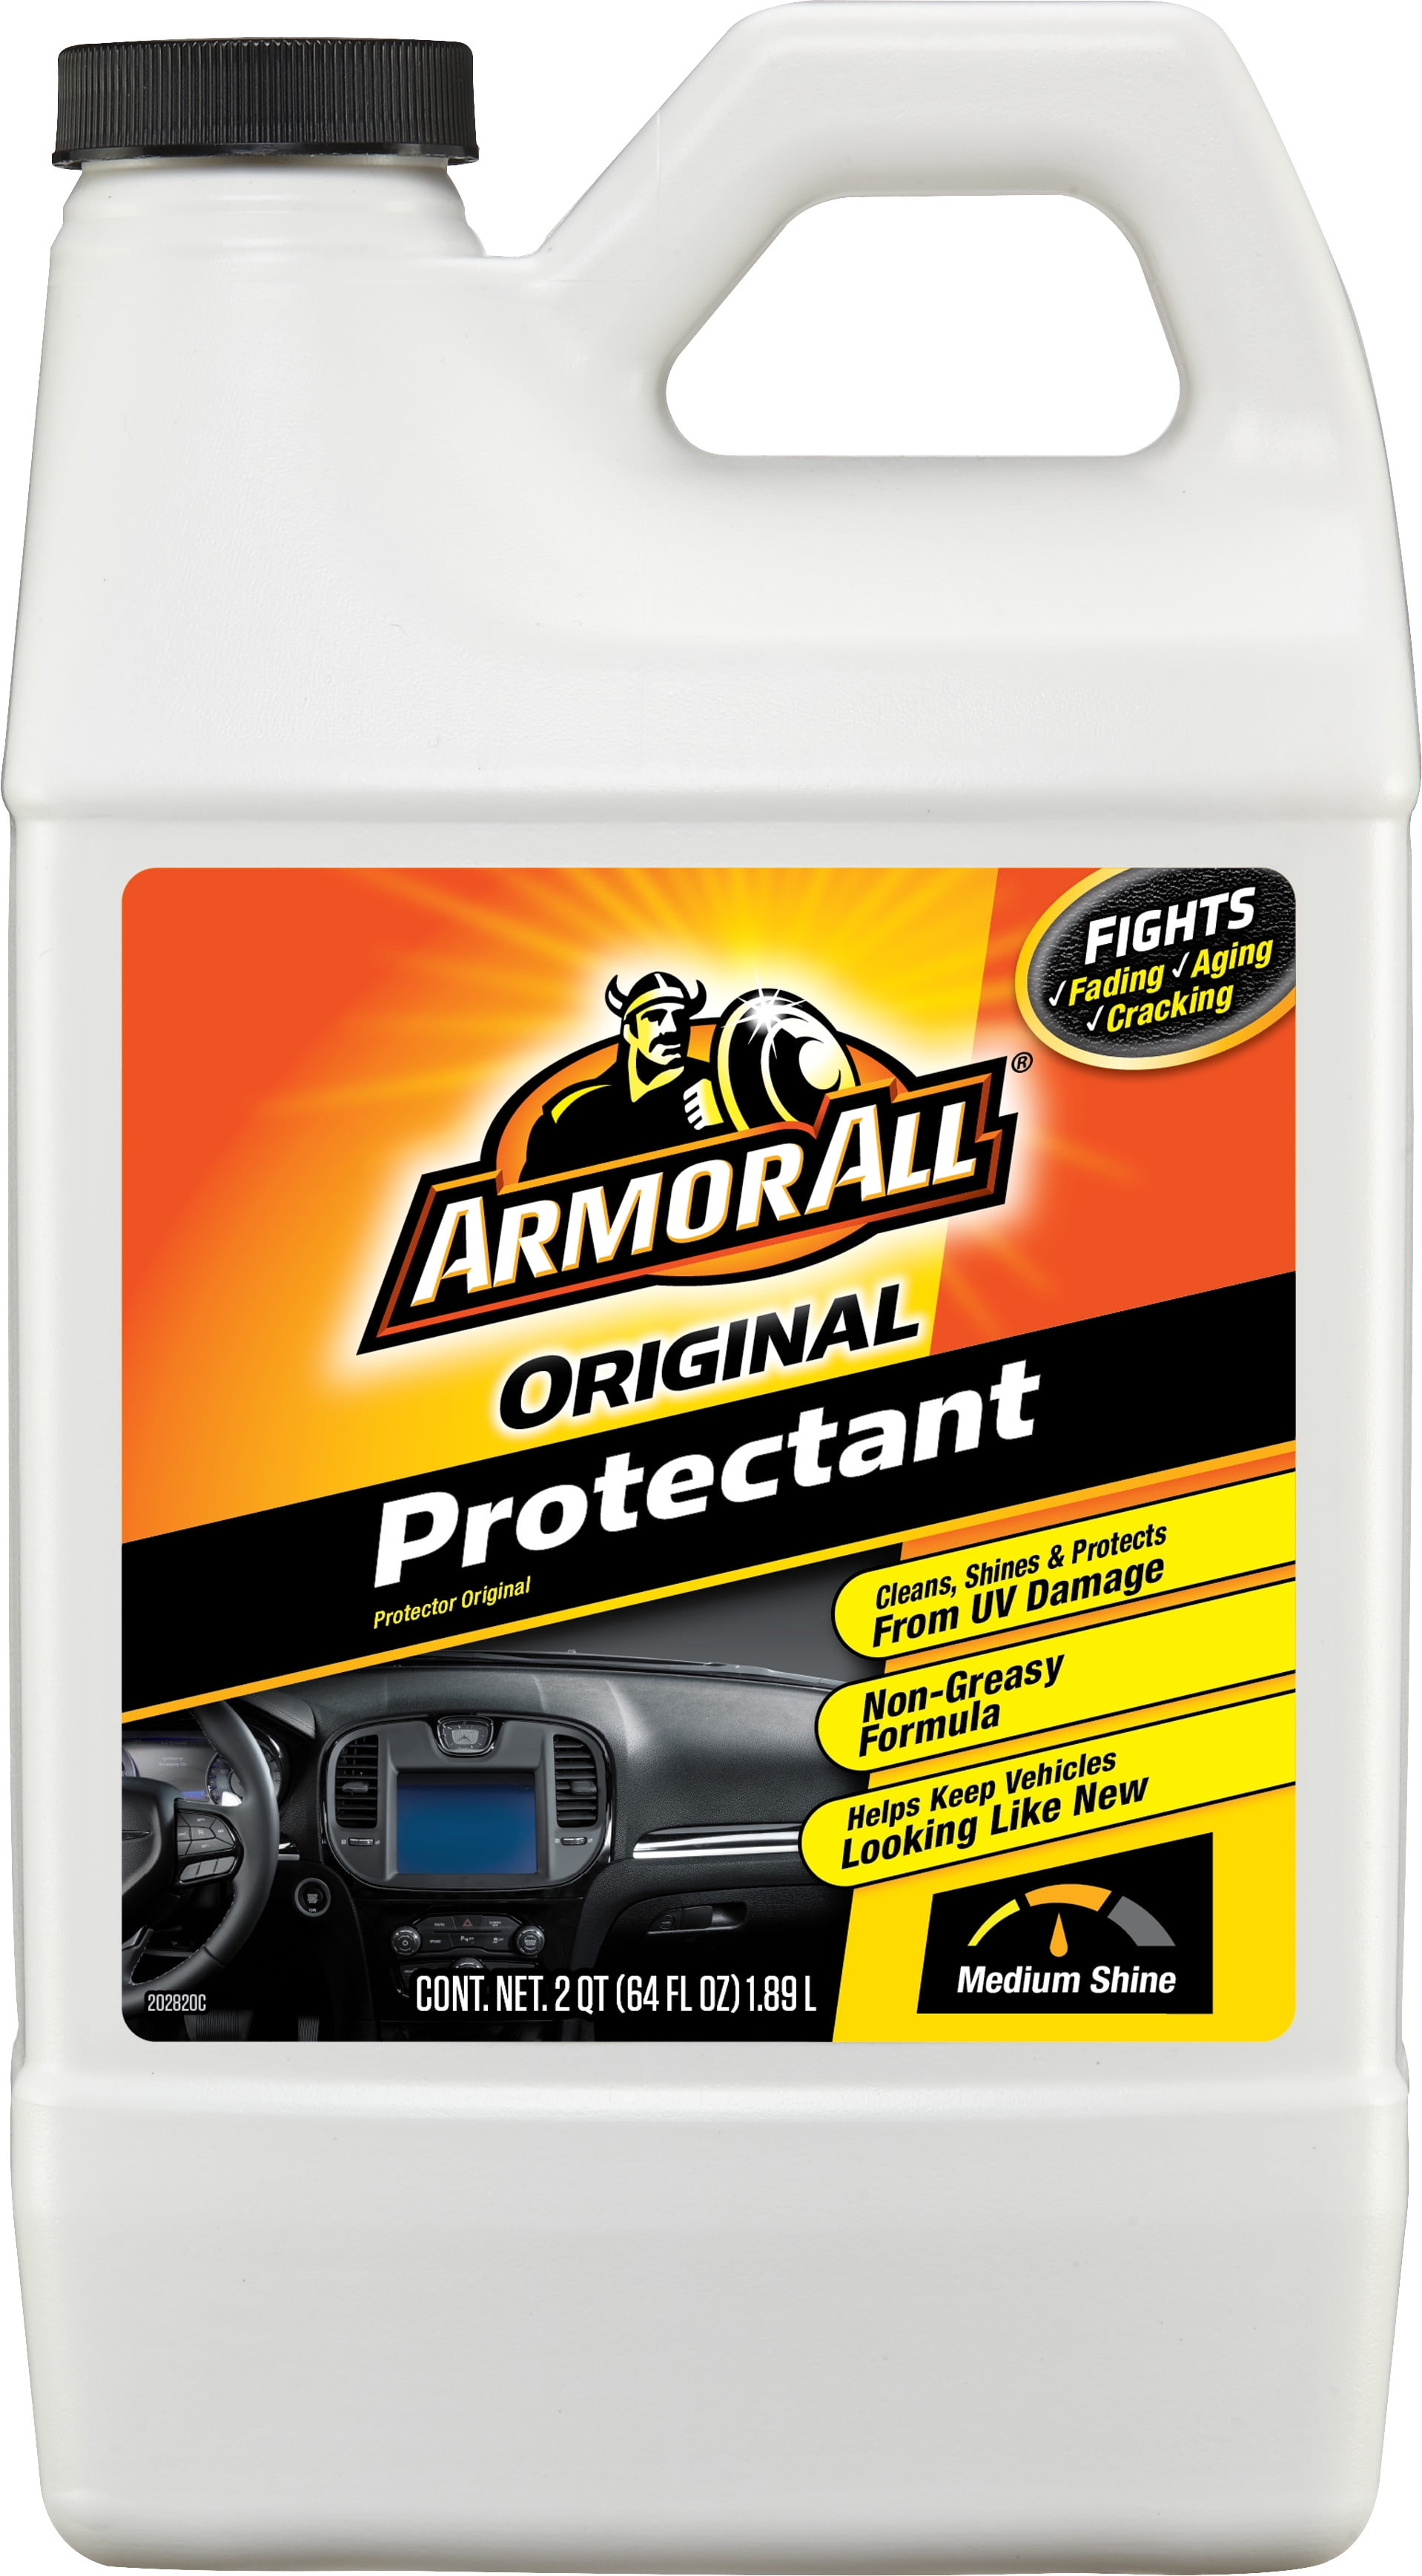 Reviews for Armor All Original Formula Car Protectant Wipes (30